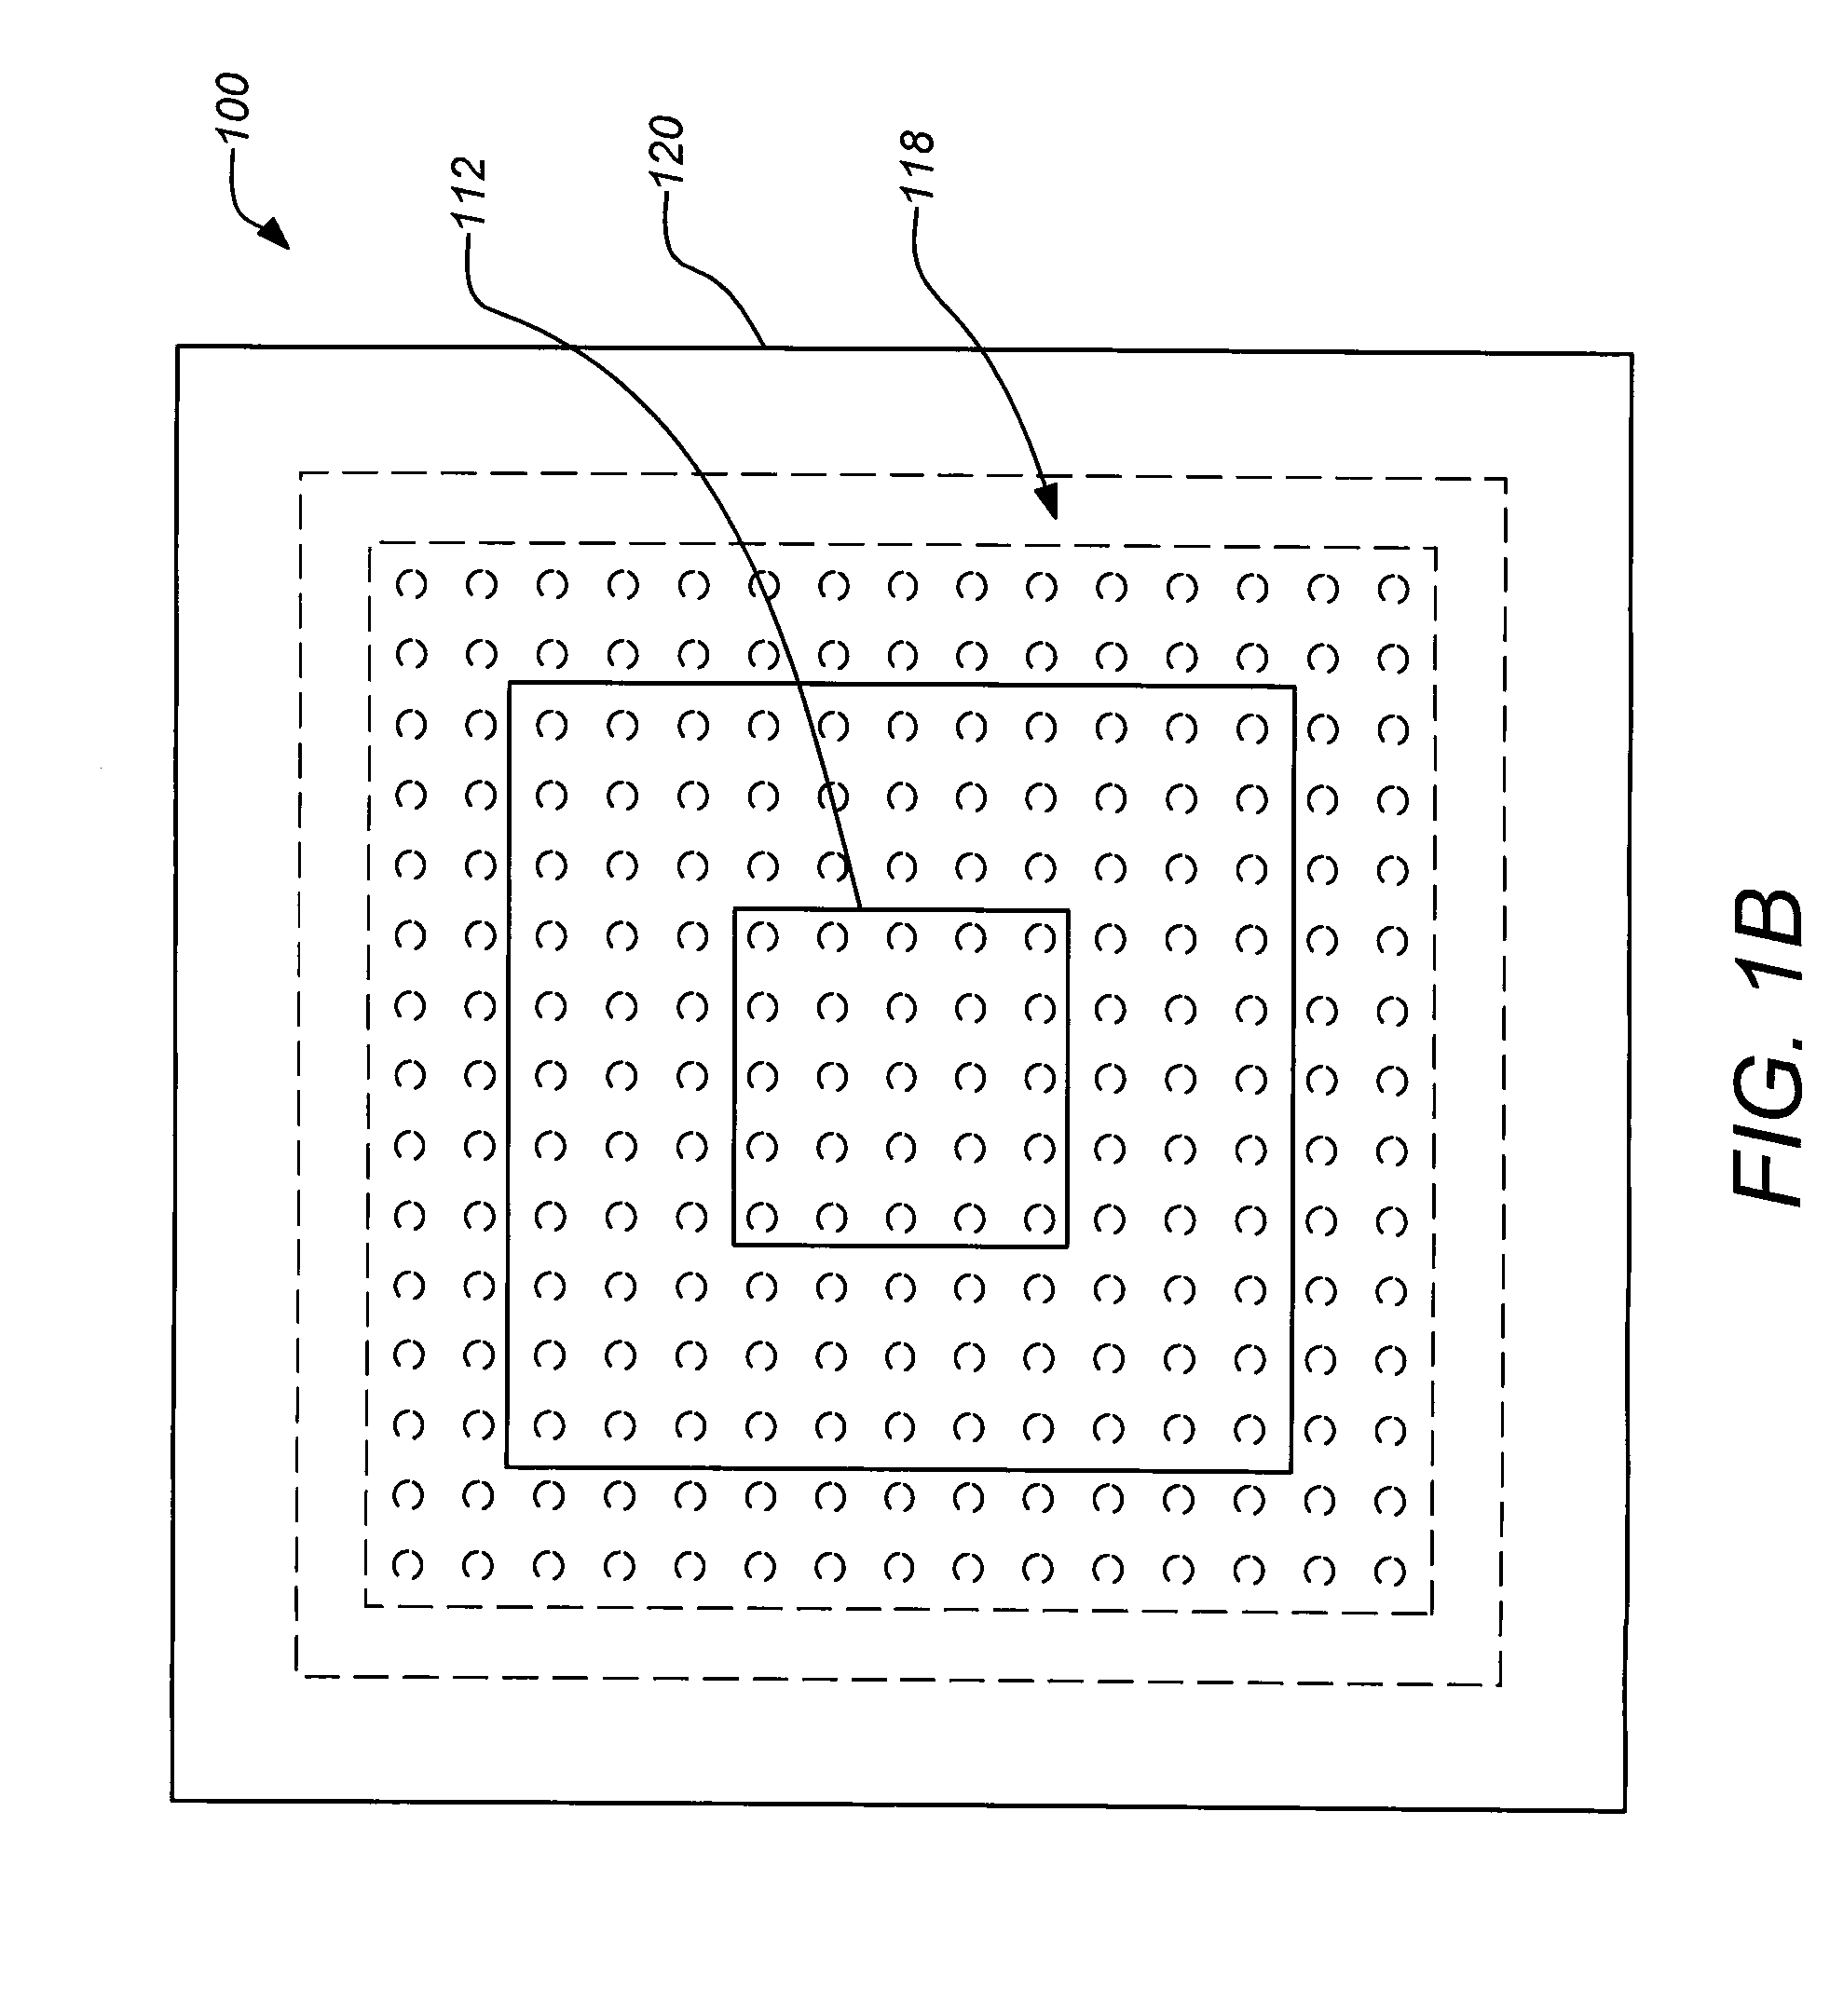 Encapsulated multi-phase electronics heat-sink